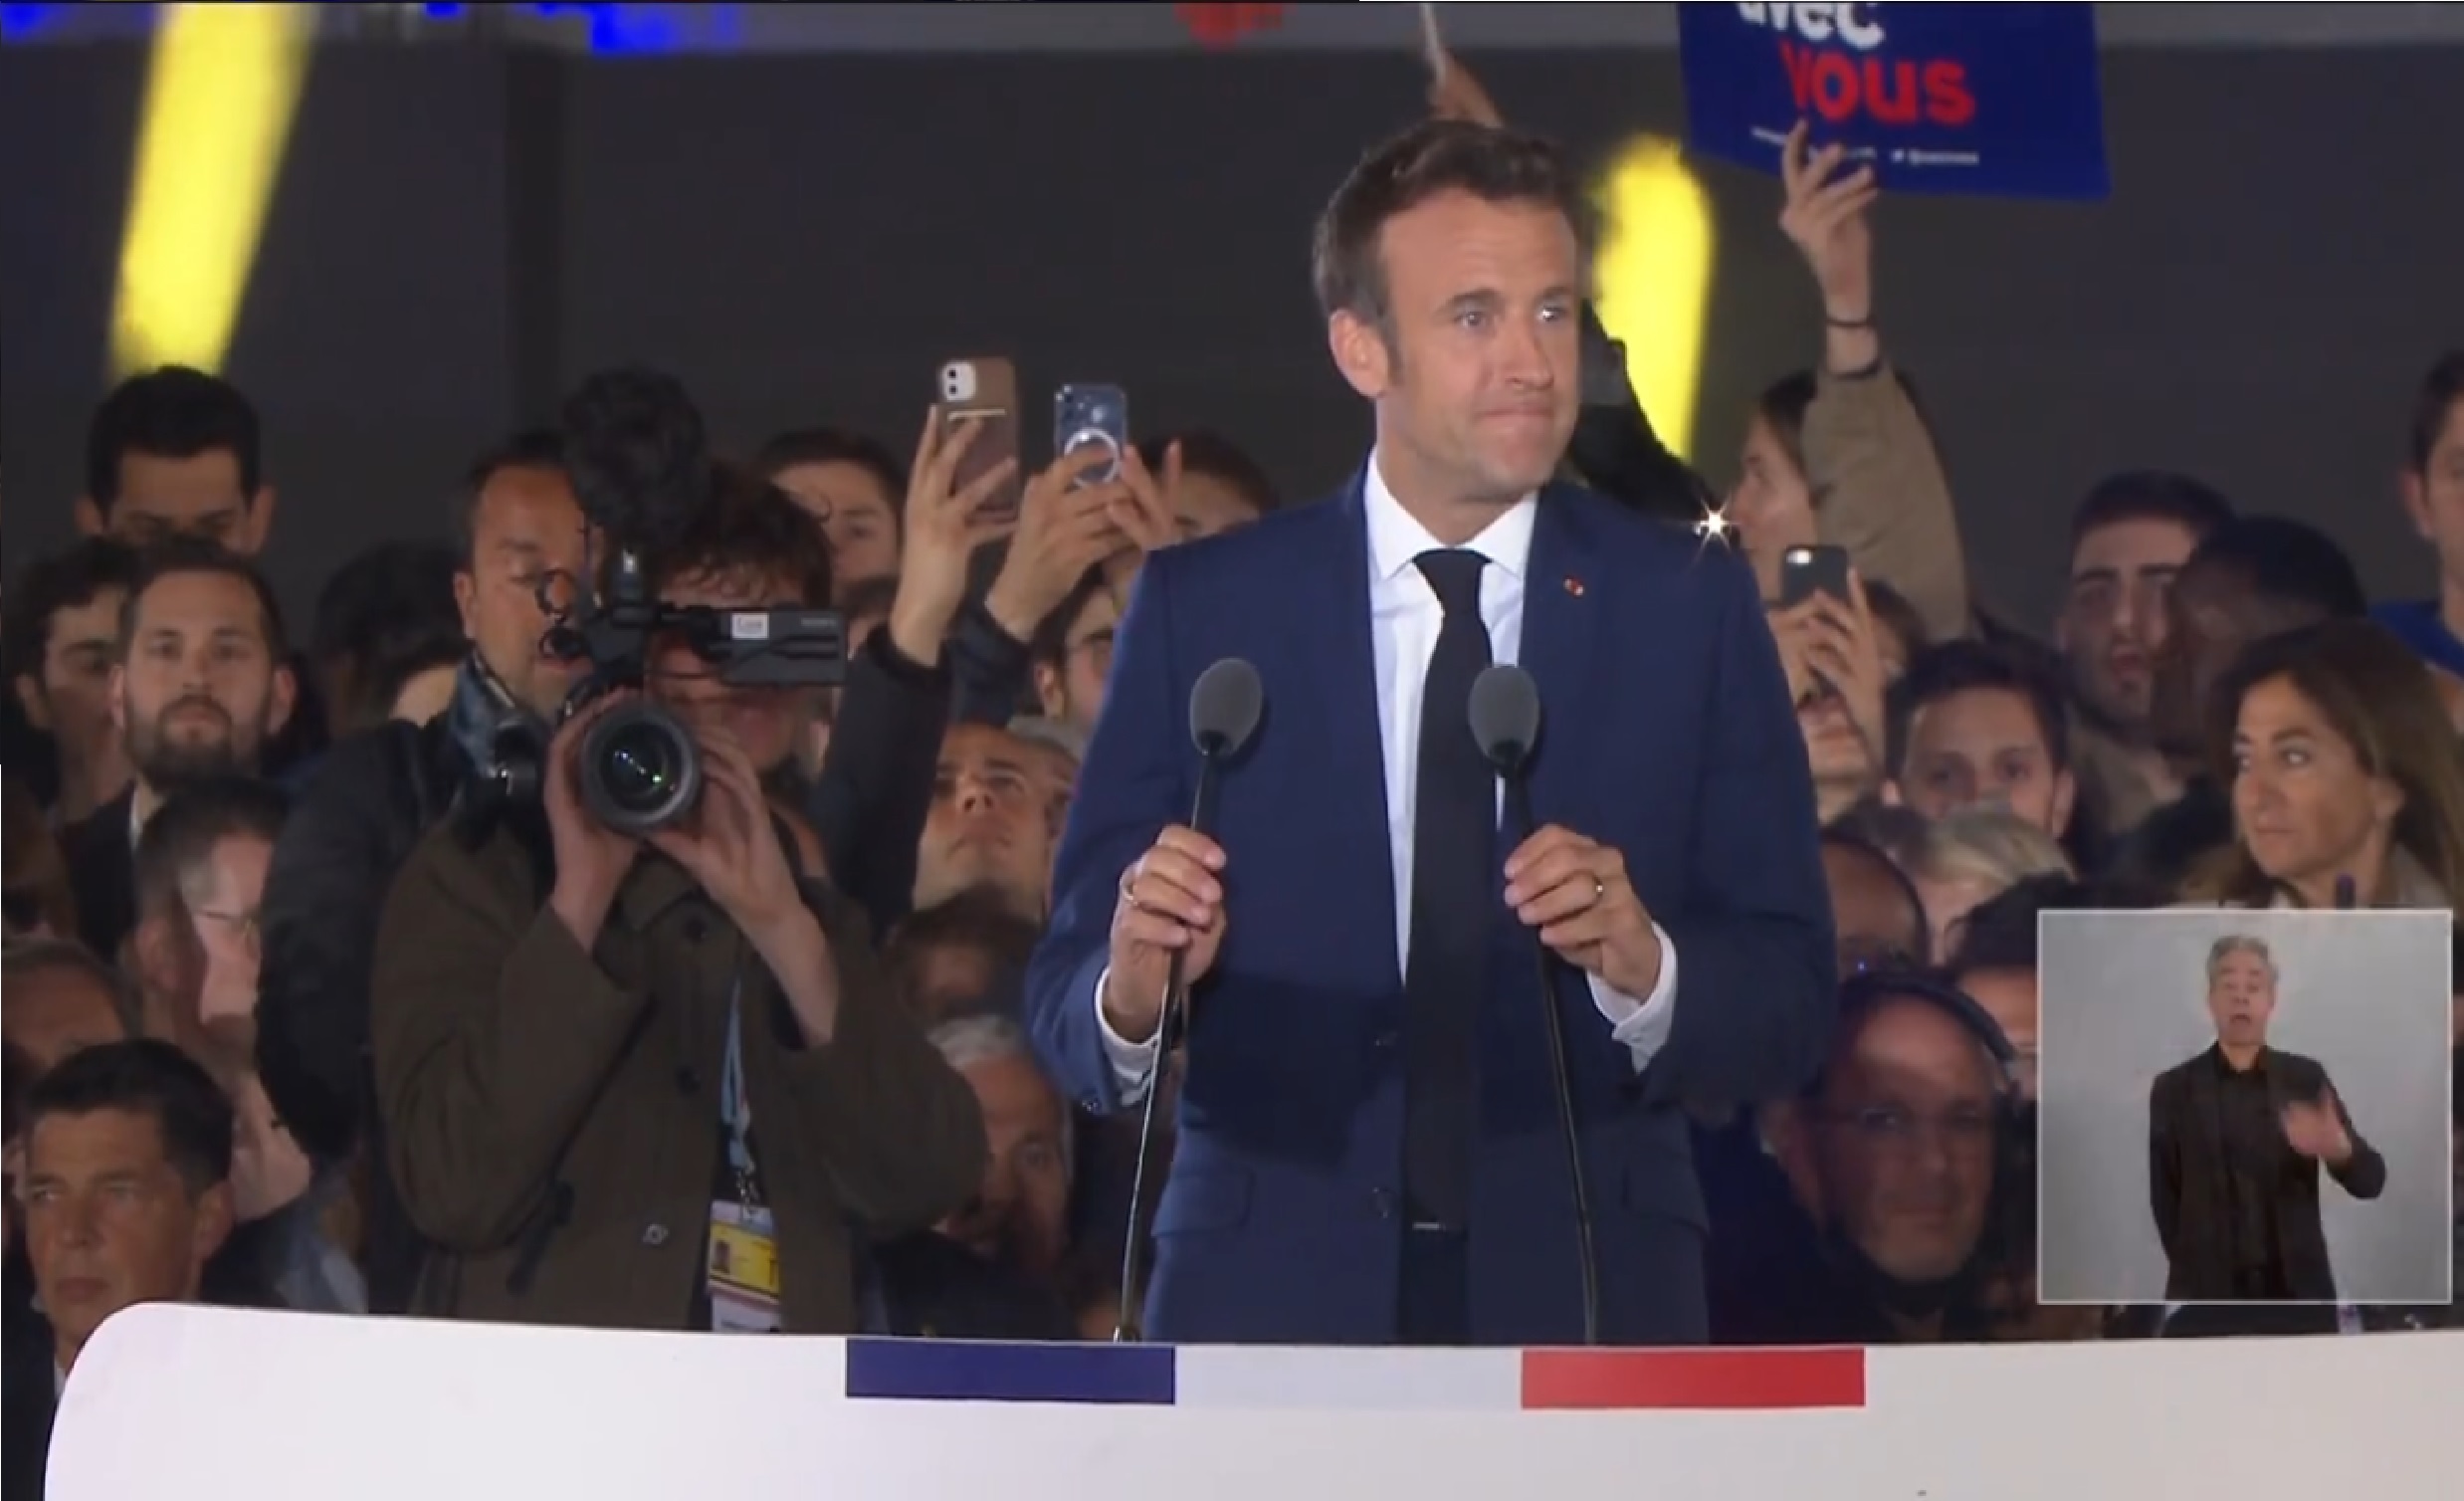 Emmanuel Macron extenderá su mandato 5 años como presidente de Francia